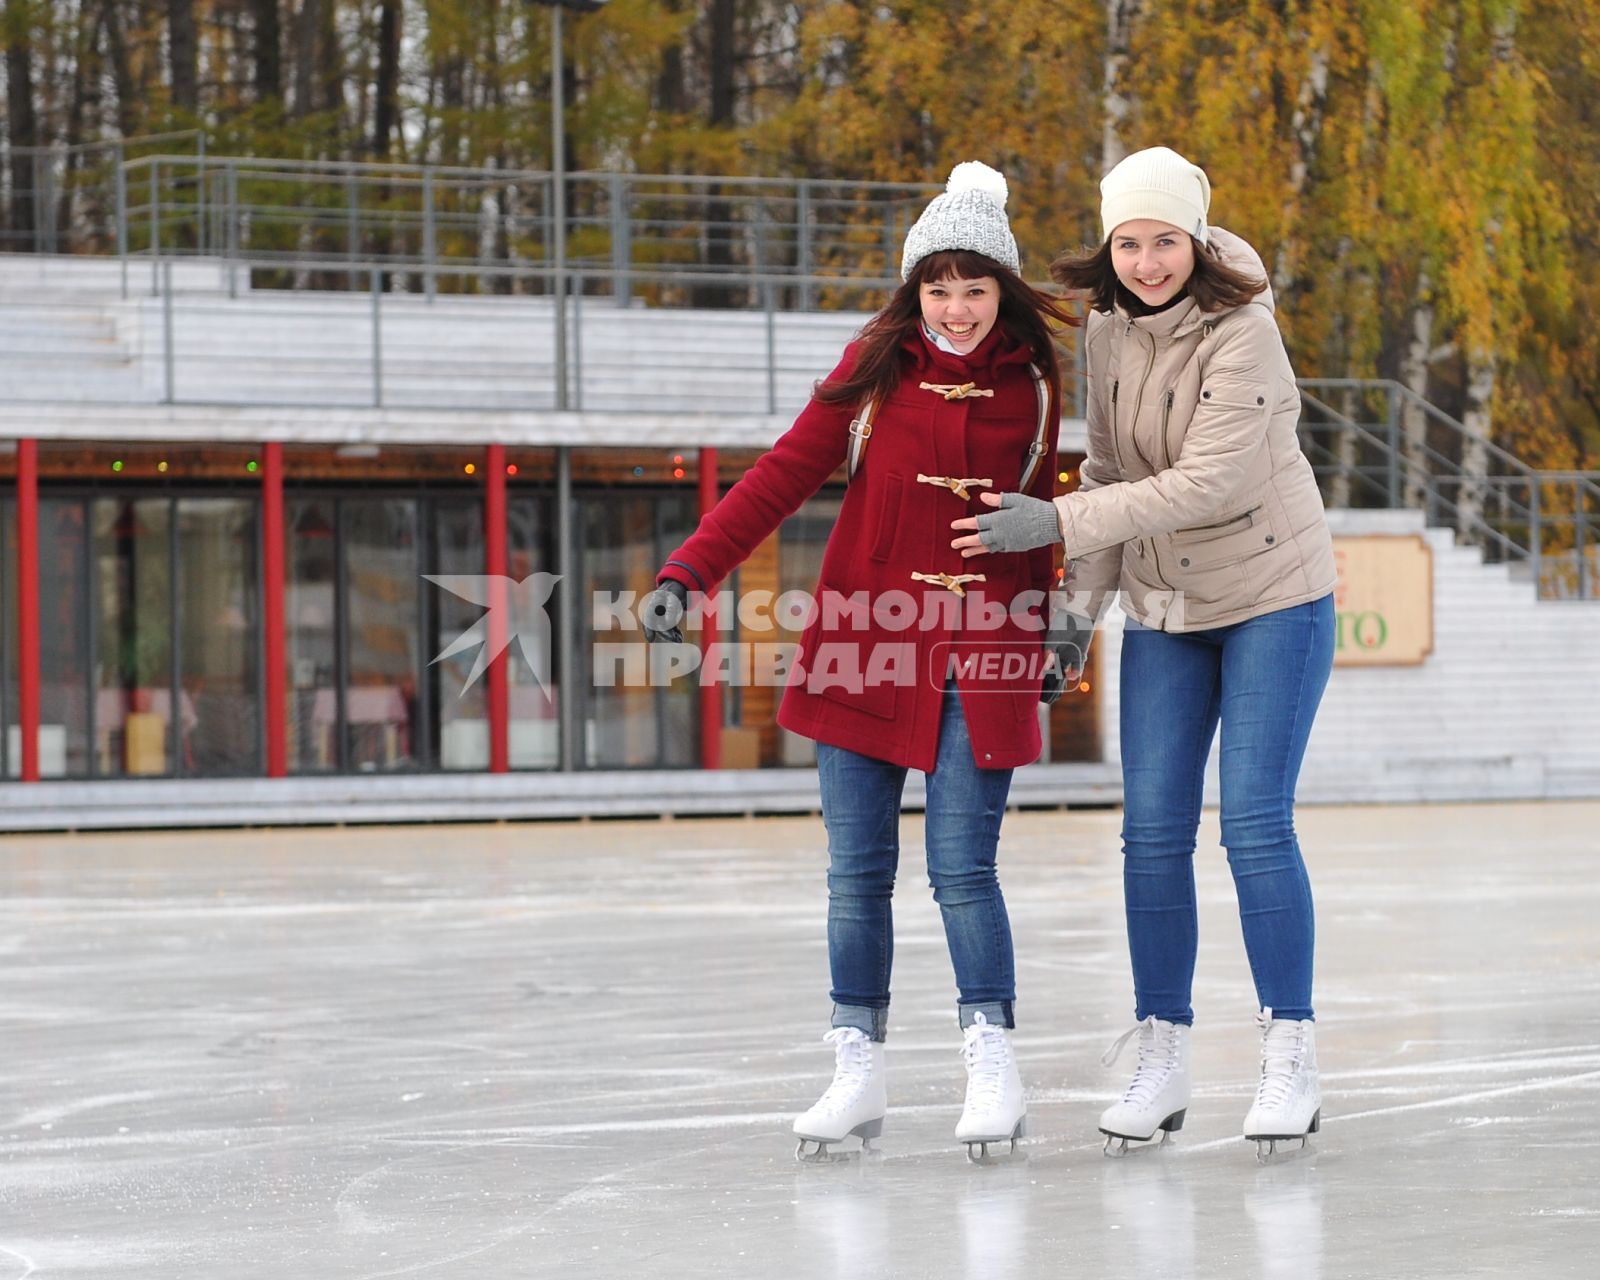 Парк культуры и отдыха `Сокольники` стал первым парком Москвы, открывшим зимний сезон. На снимке: девушаки на катке `Лёд`.